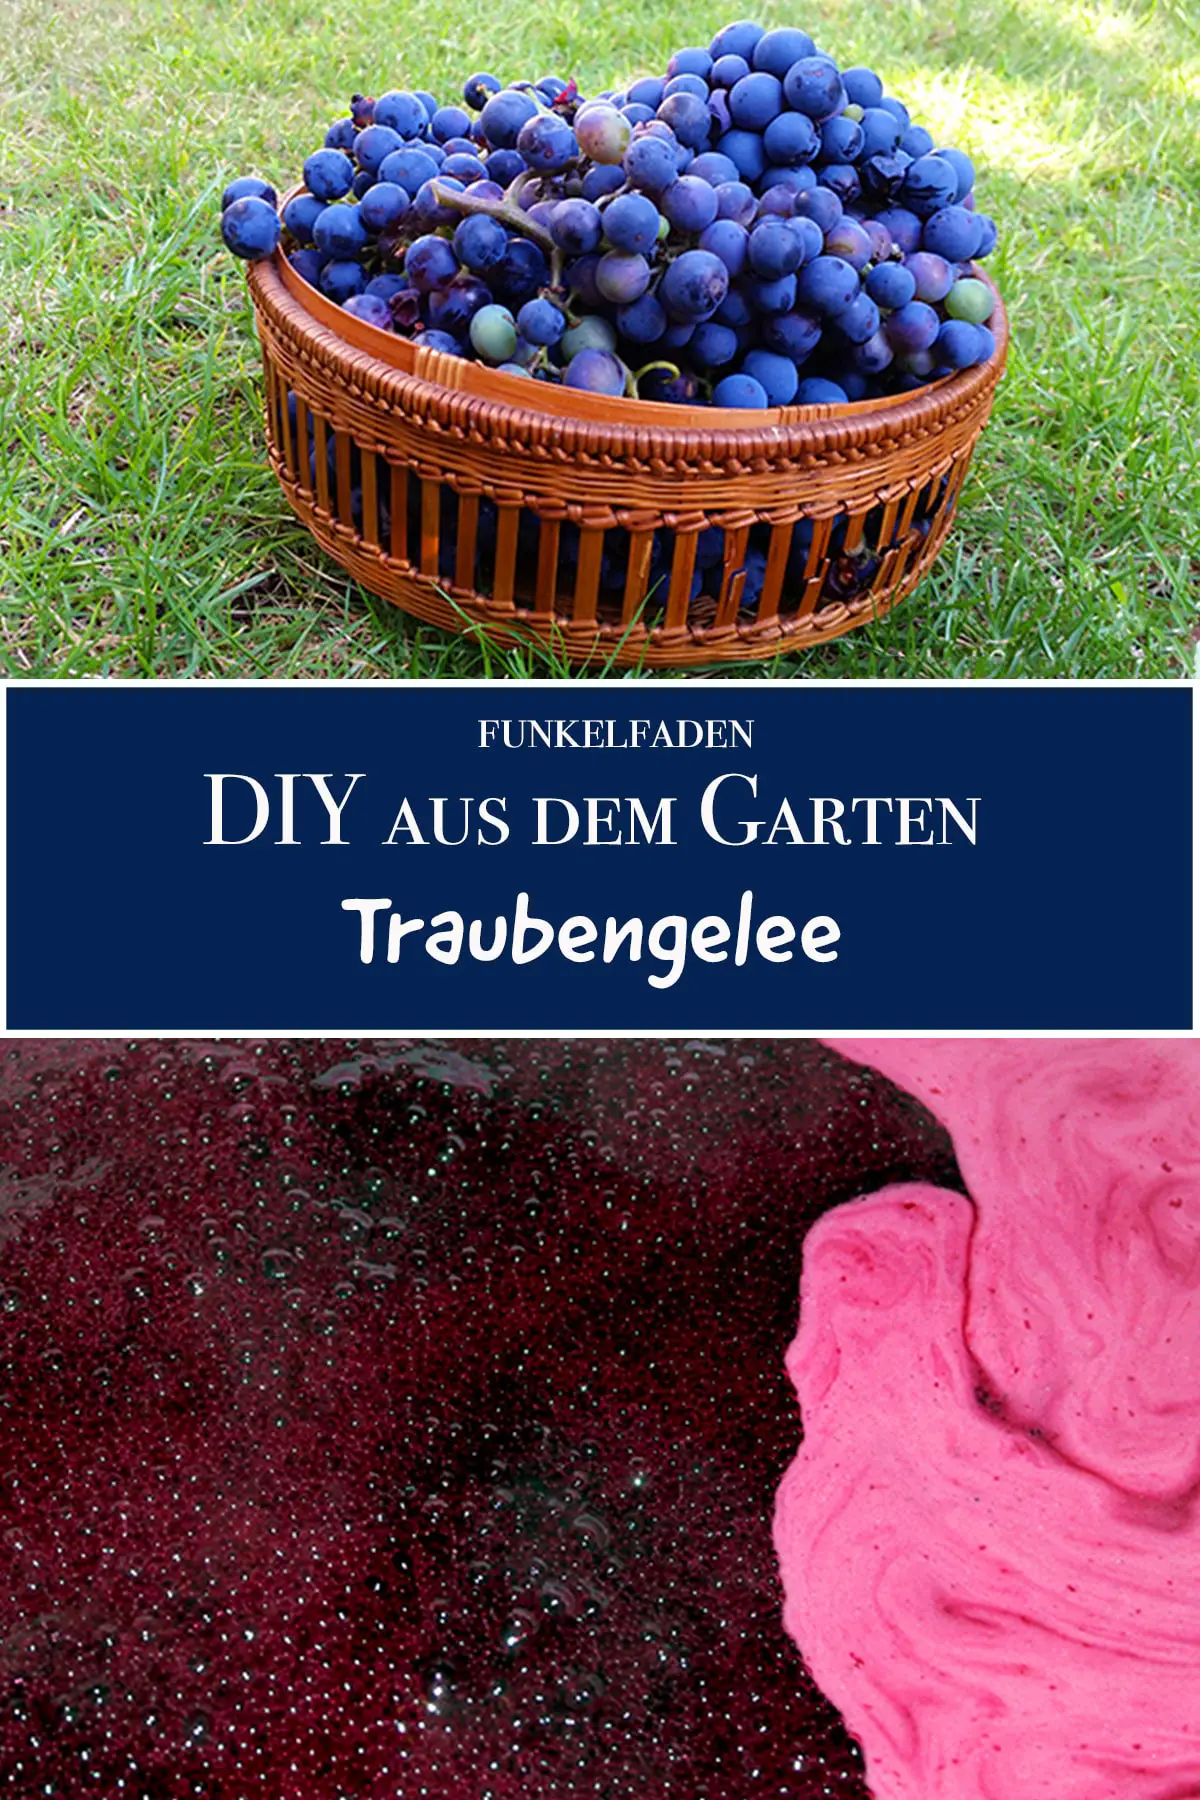 DIY Rezept - Traubengelee aus Weintrauben aus dem Garten Selbermachen